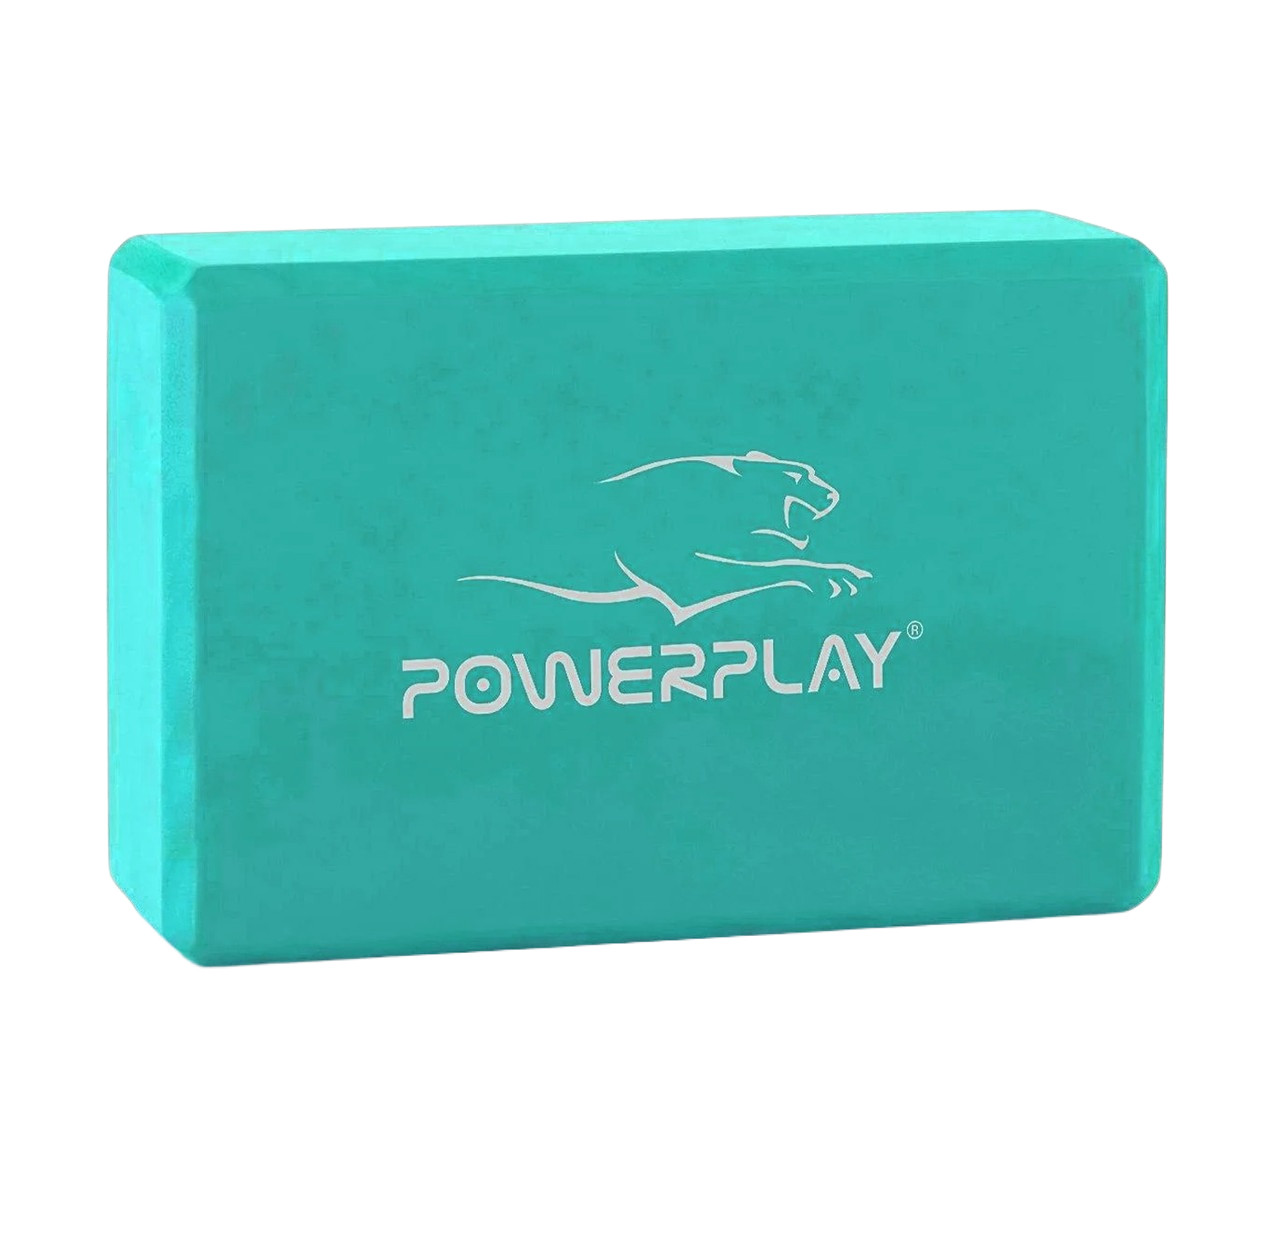 Блок для йоги PowerPlay 4006 Yoga Brick М'ятний